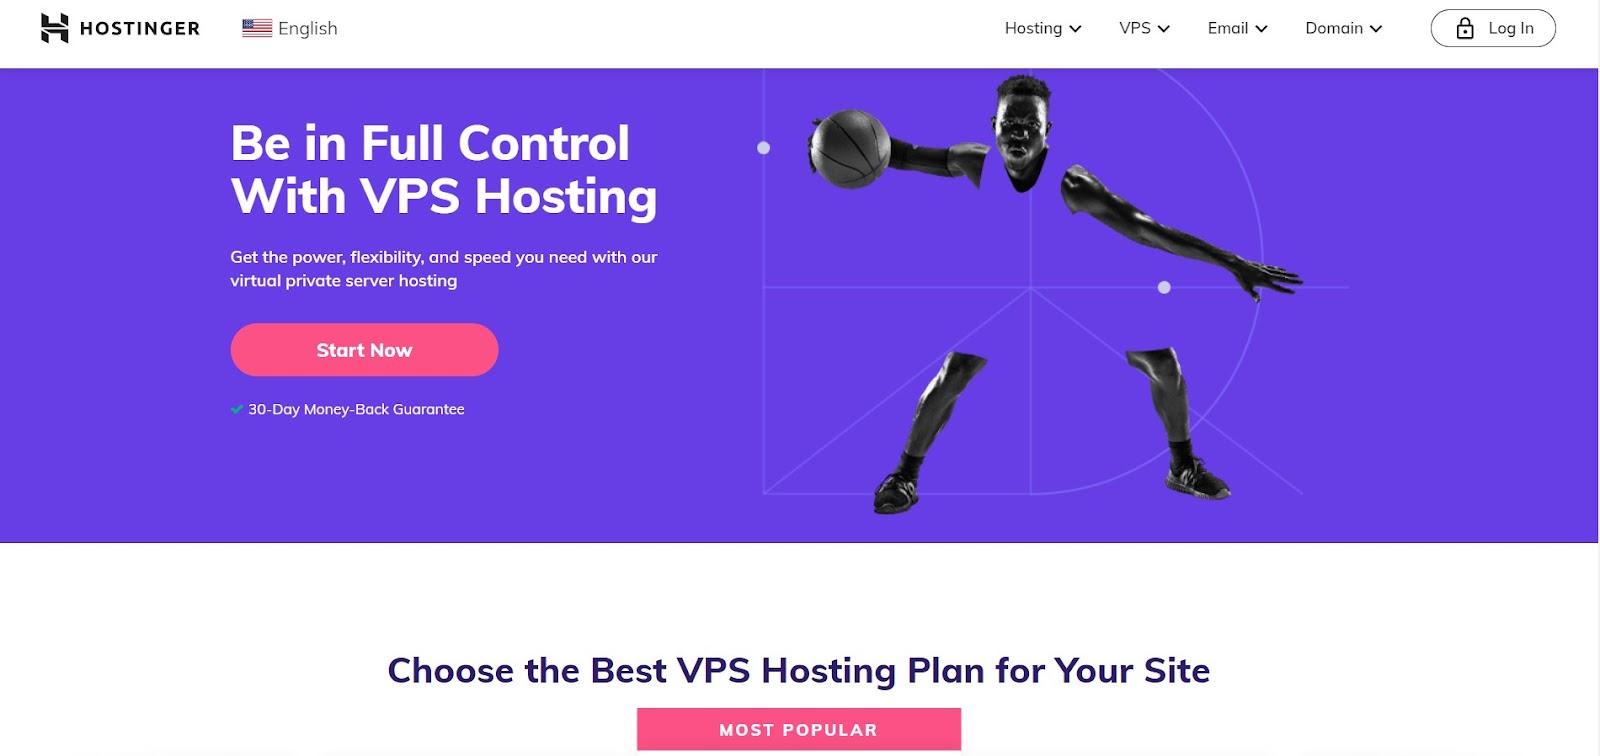 Hostinger VPS hosting landing page.